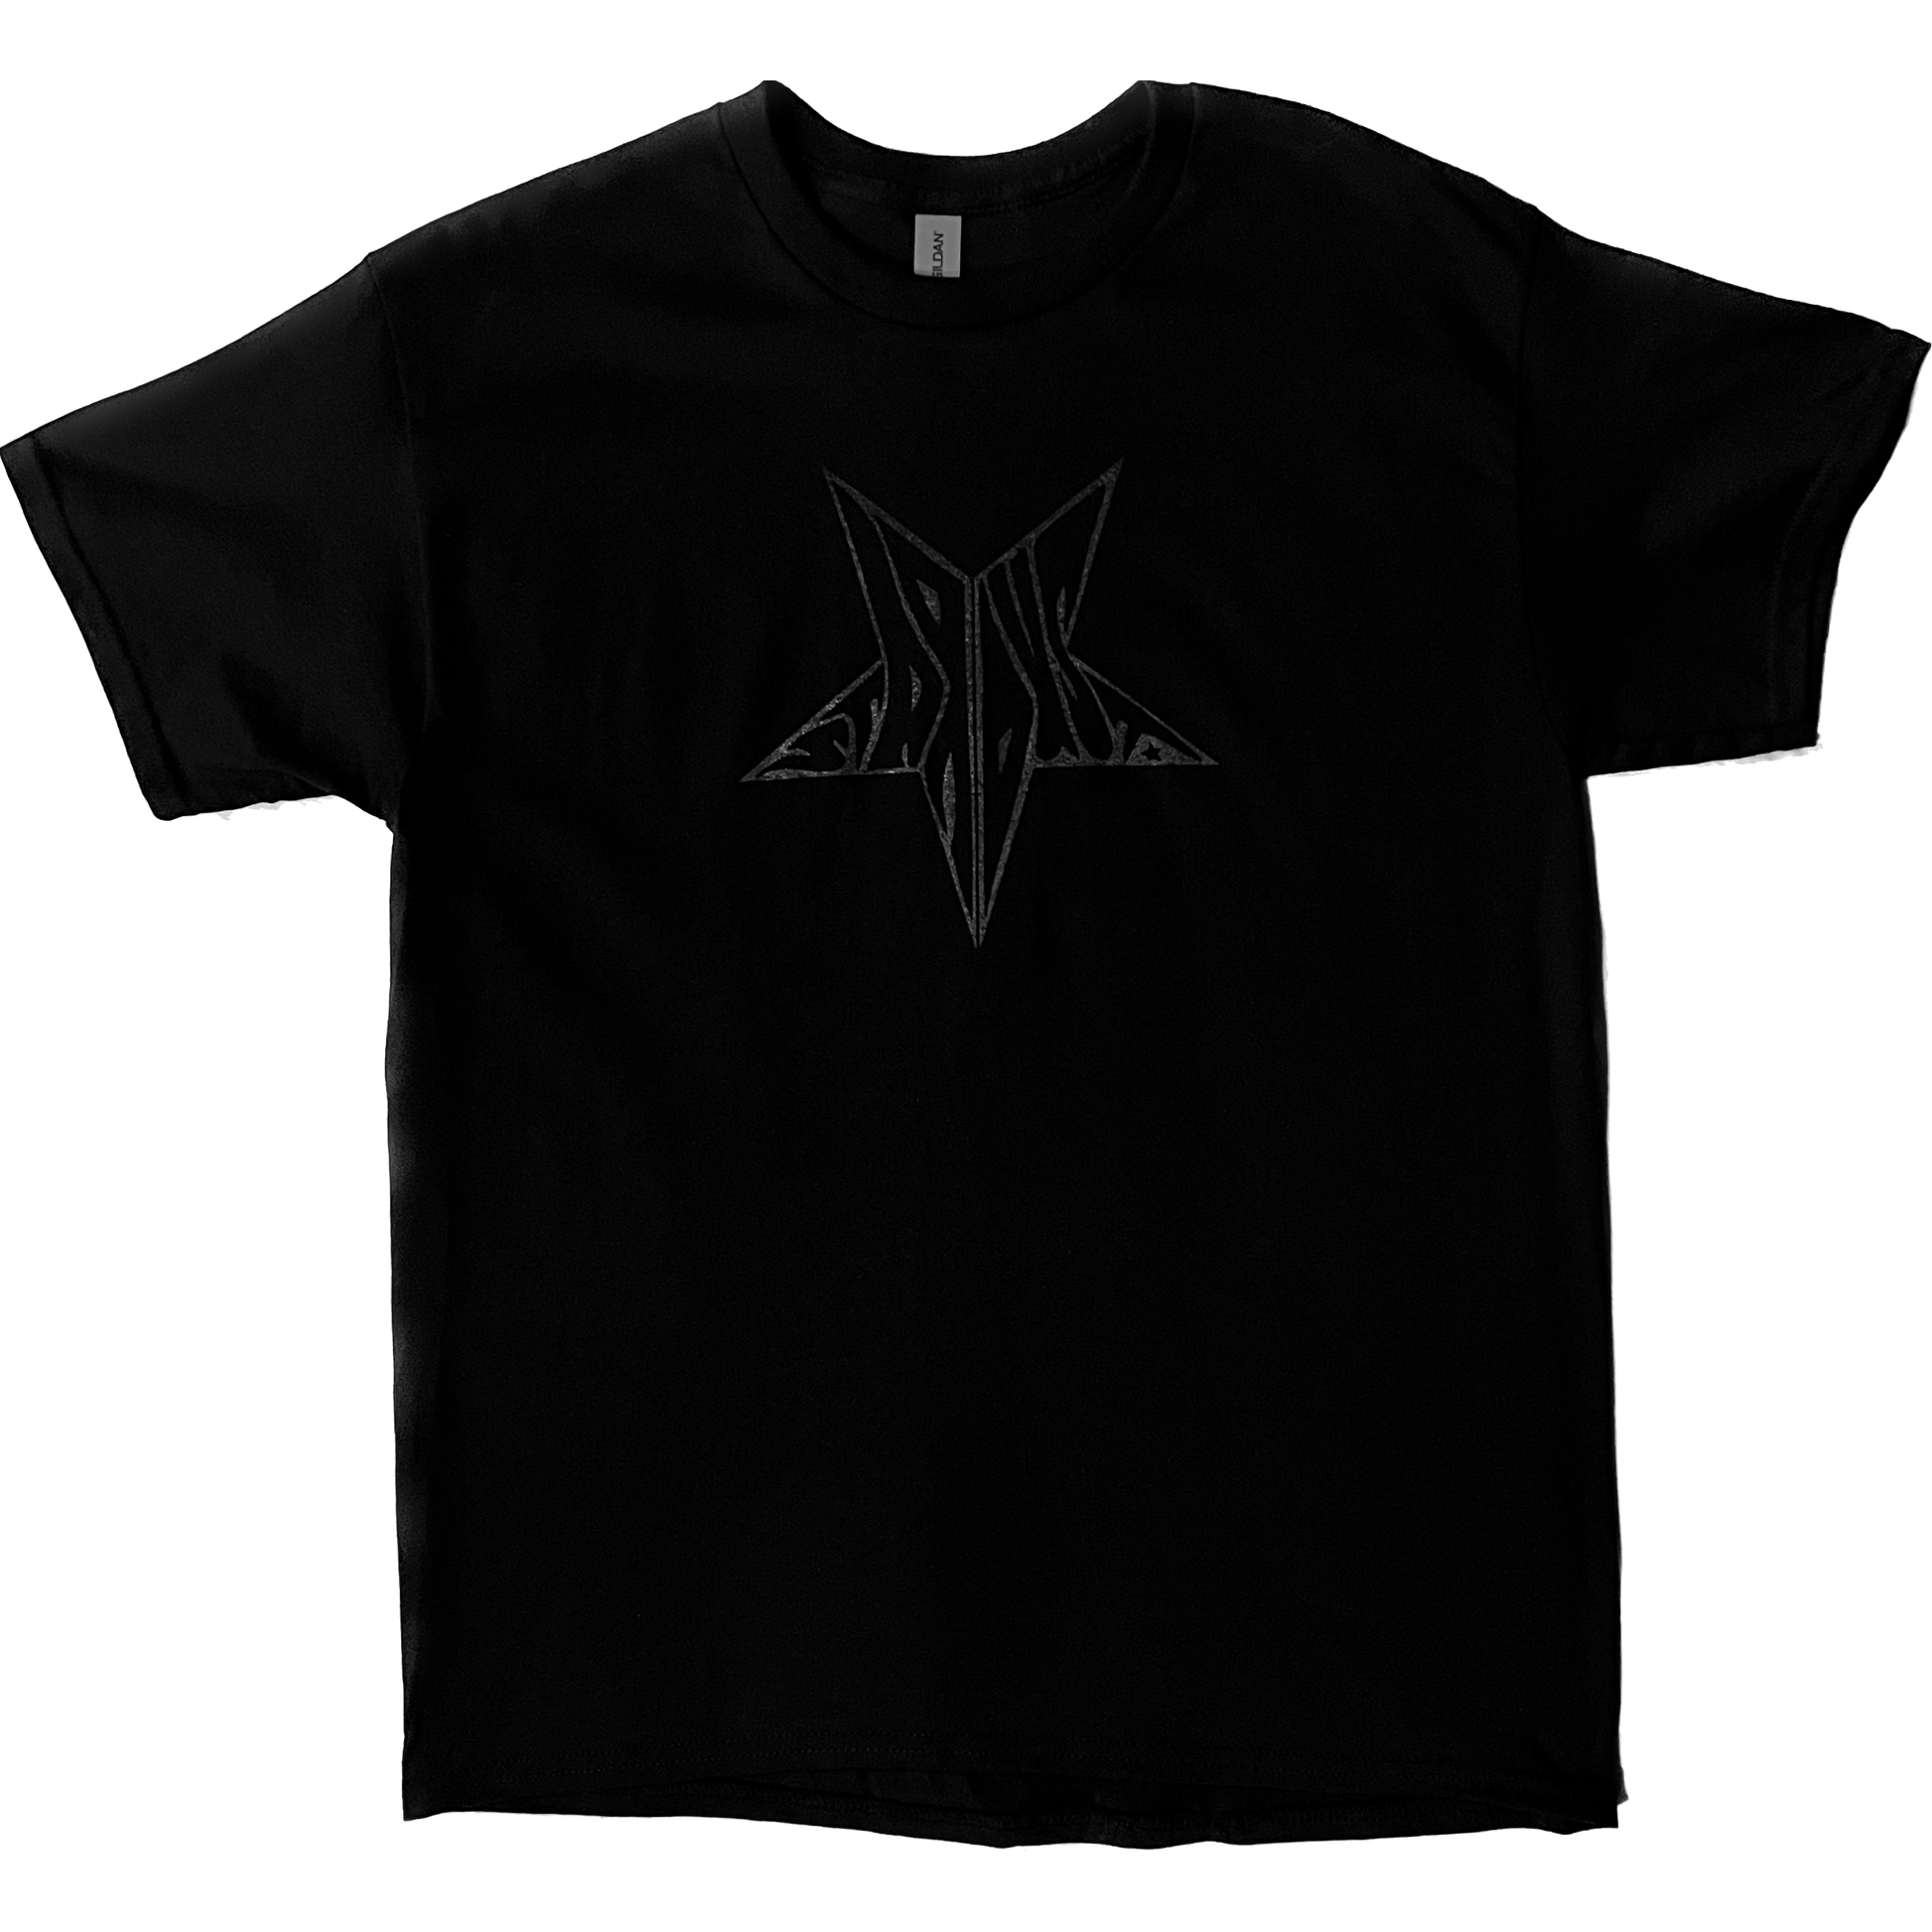 Stardust Skate Shop Black Shimmer Star Tee 026 - Assorted Colors - 6.0 oz